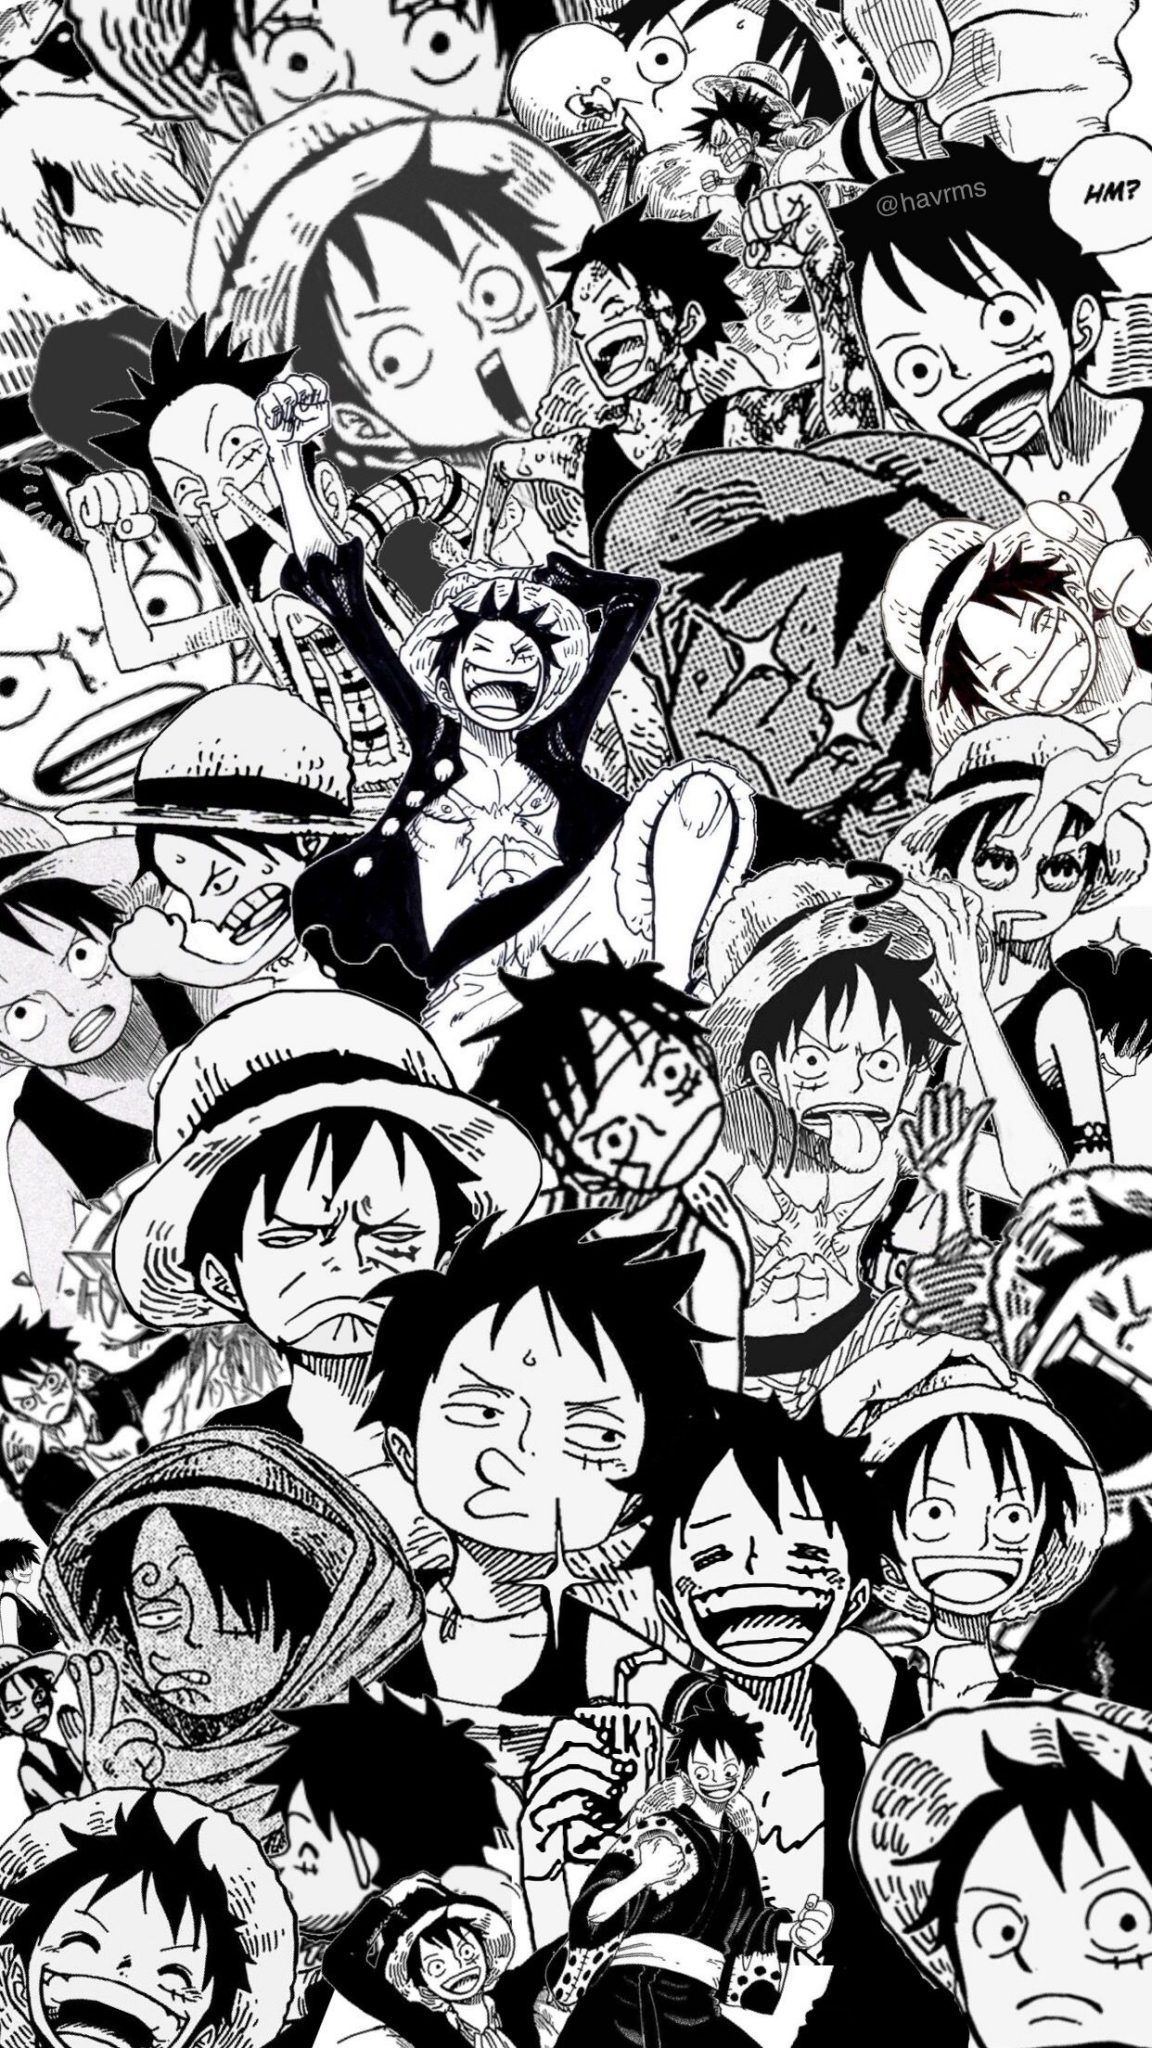 Nếu bạn yêu thích việc sử dụng màu đen trắng để tạo ra các tác phẩm nghệ thuật, thì hình nền One Piece đen trắng này sẽ khiến bạn không thể rời mắt. Tuyệt đẹp và đầy sức mạnh, đảm bảo sẽ làm rung động trái tim của mọi fan One Piece.